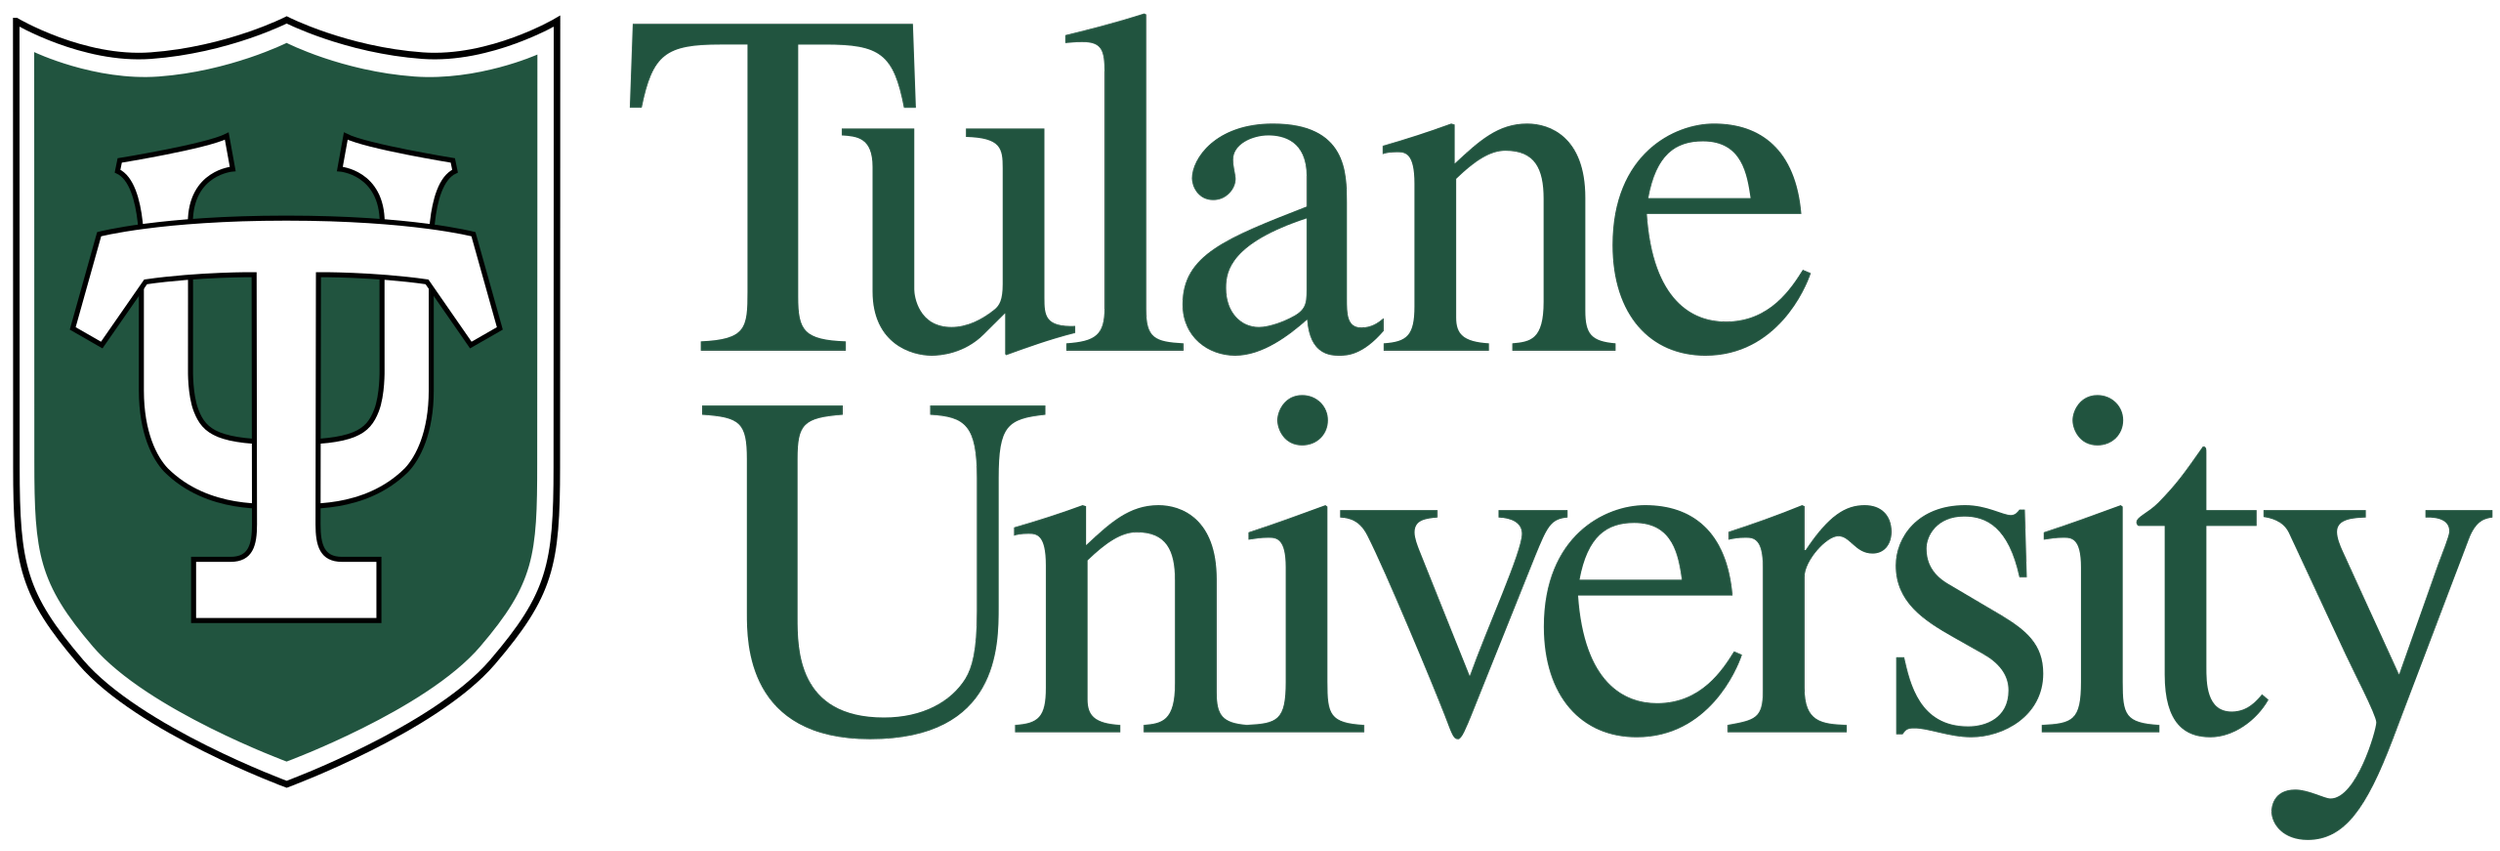 Tulane_logo.svg.png